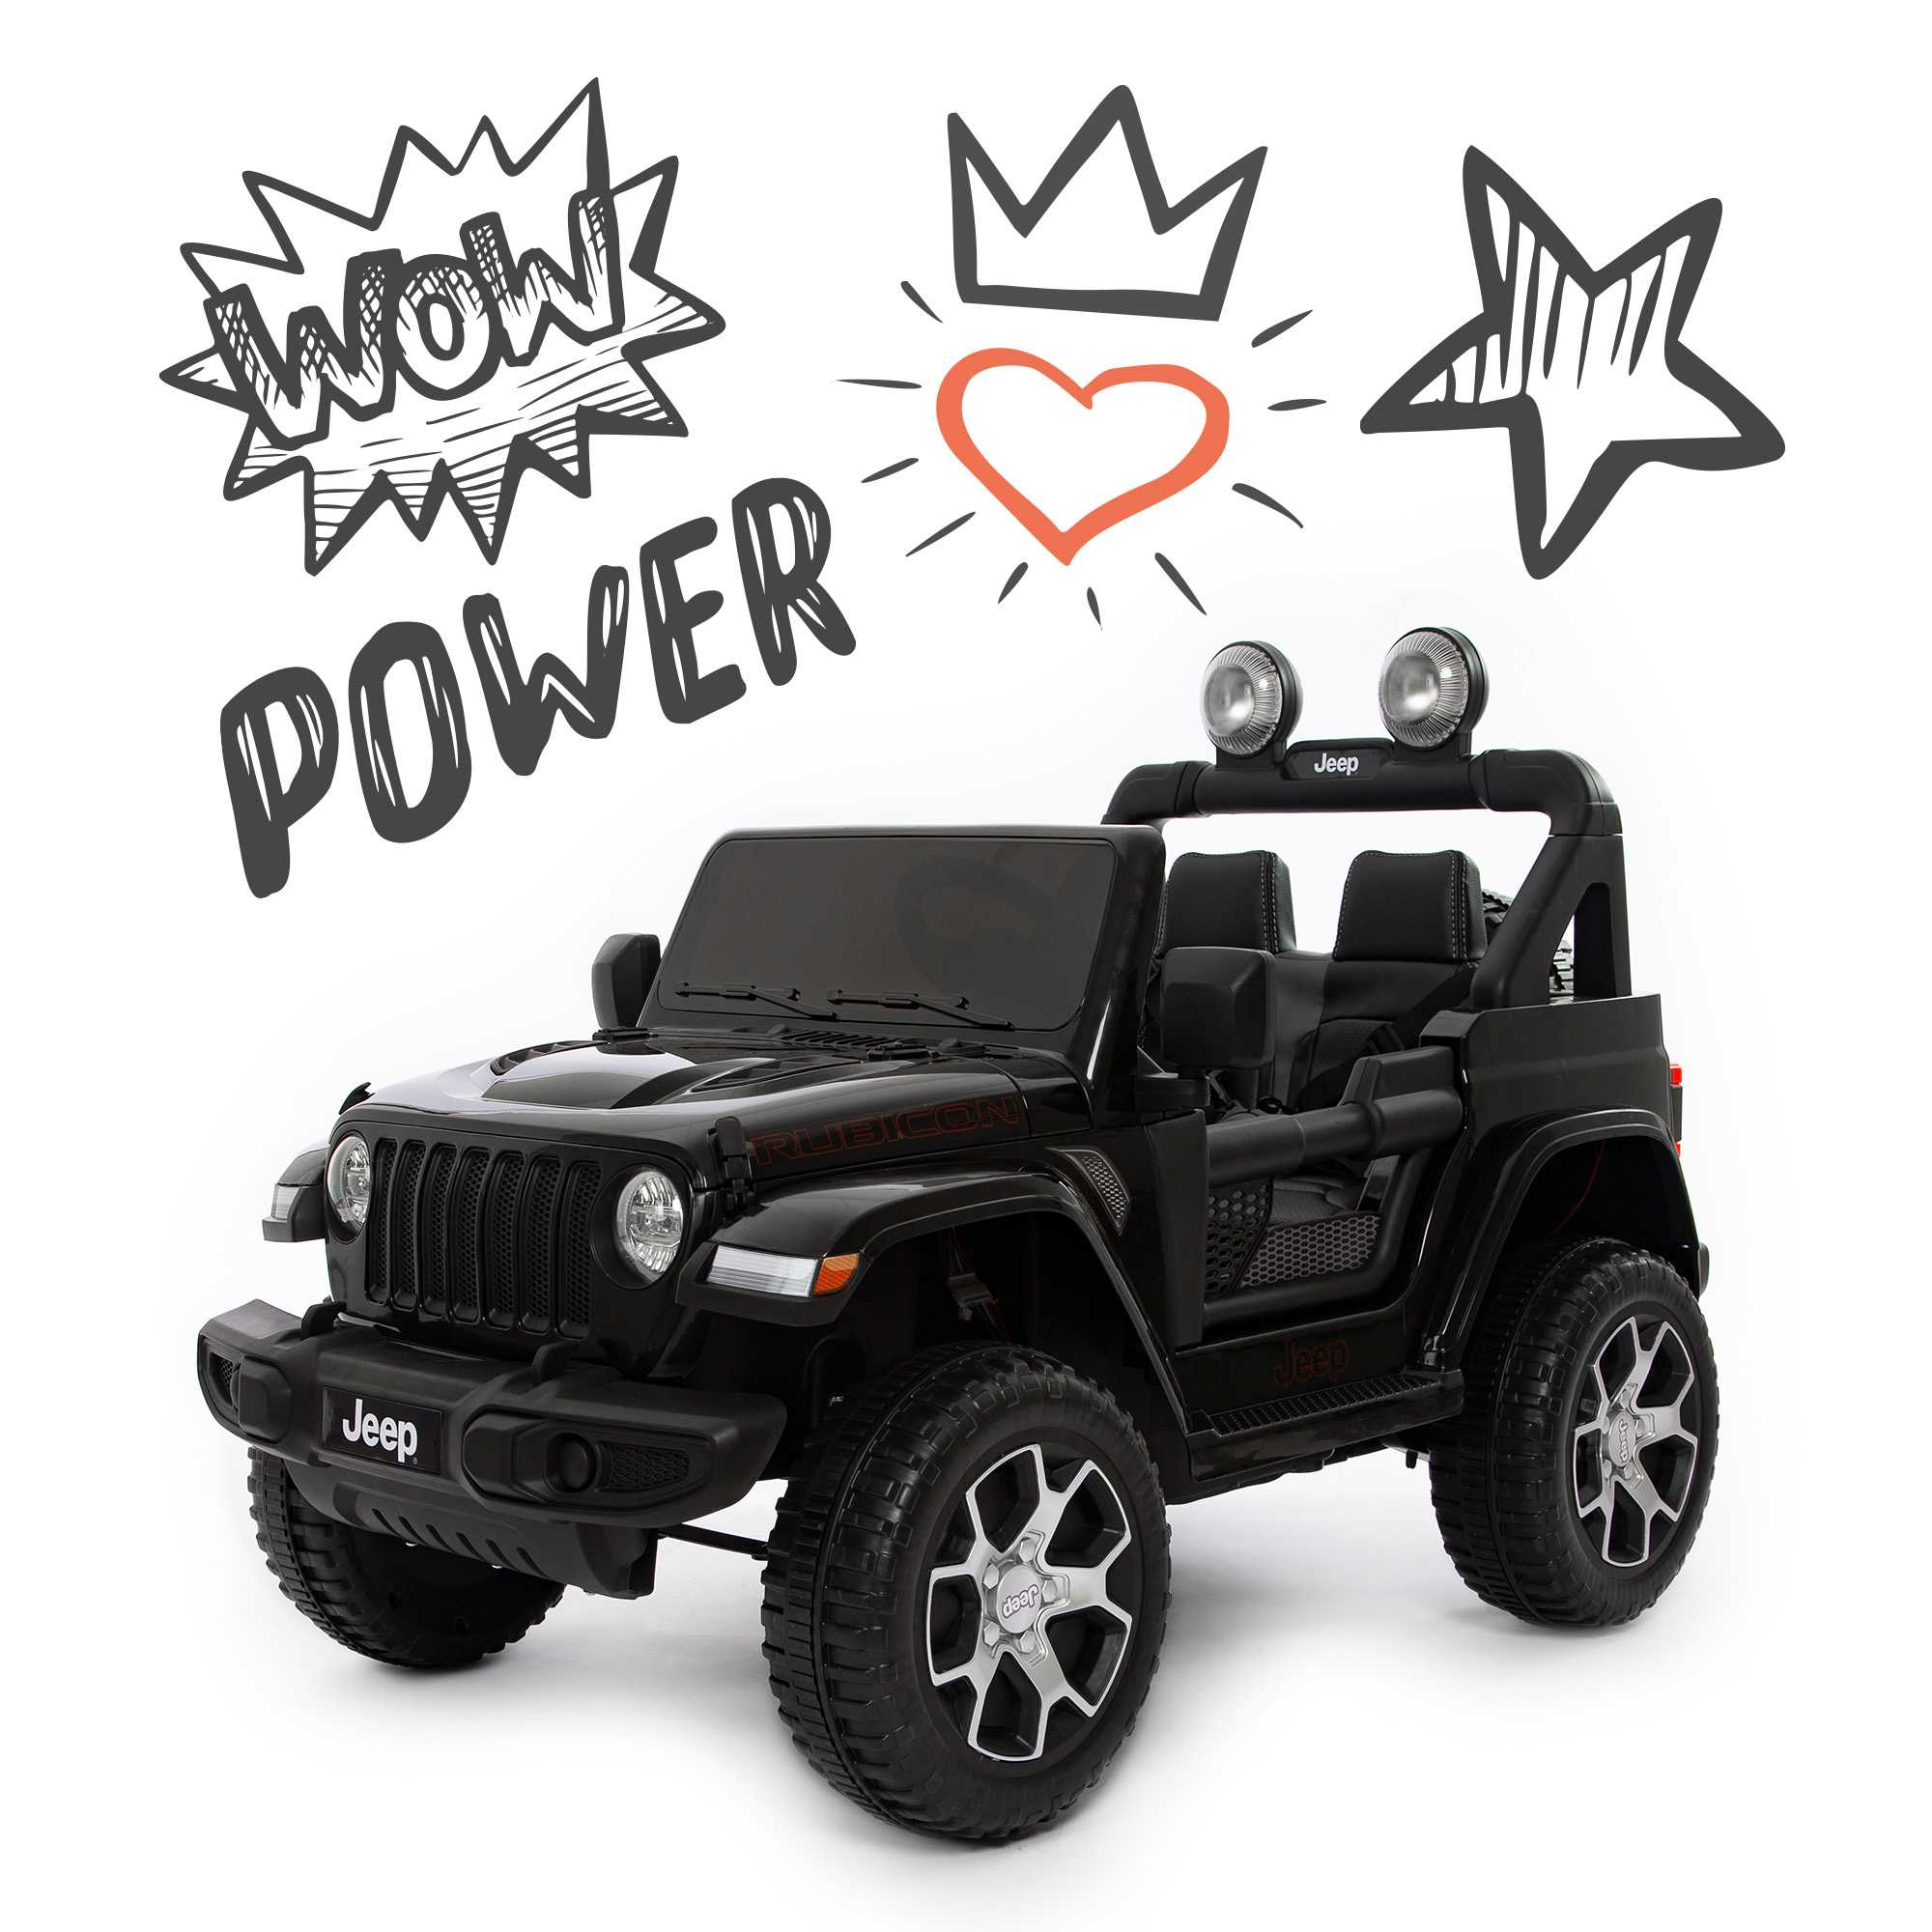 Jeep wrangler rubicon power